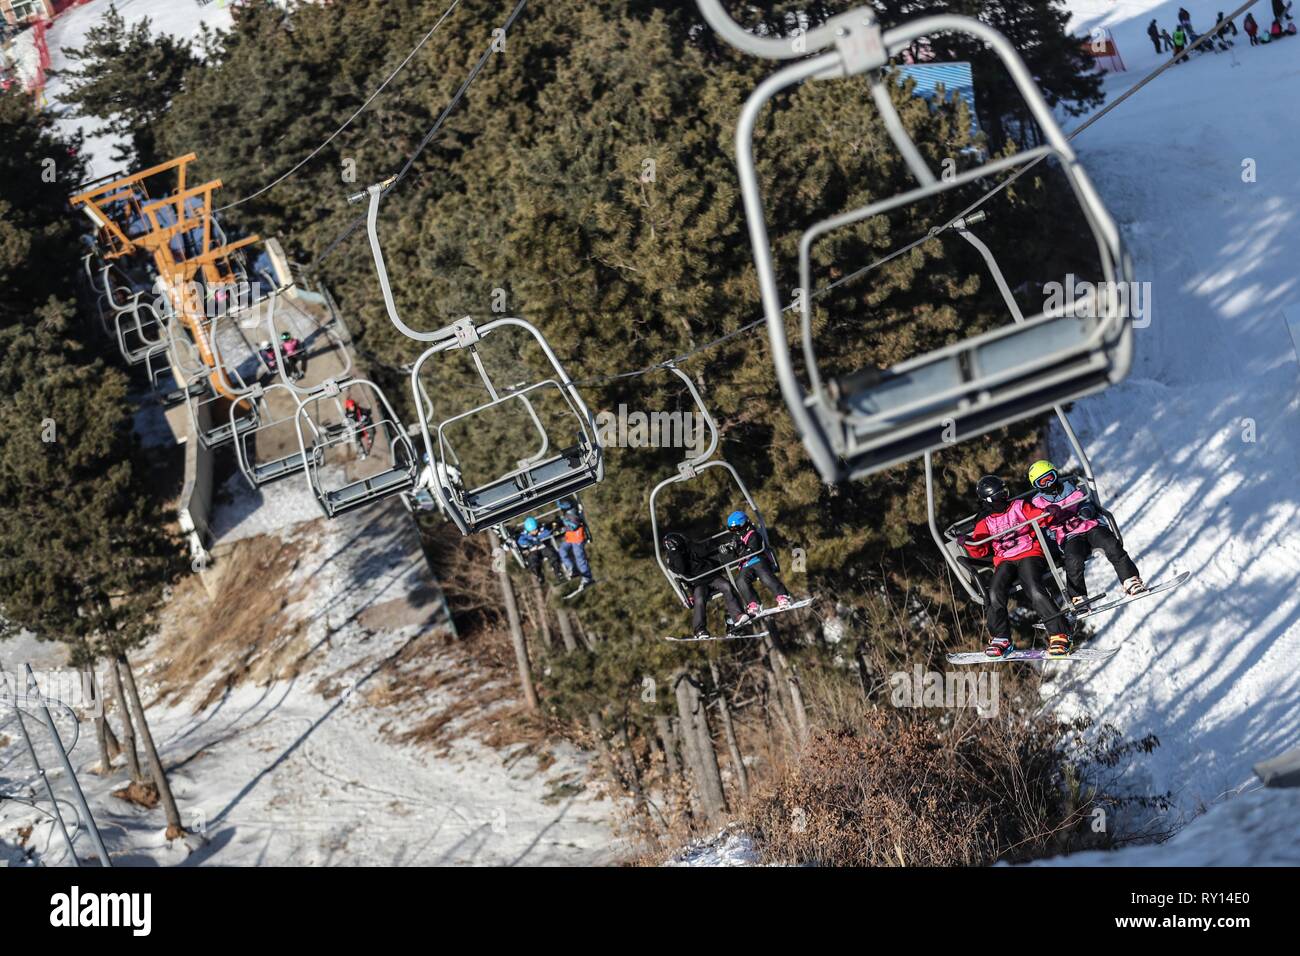 (190311) - SHENYANG, März 11, 2019 (Xinhua) - die Kinder nehmen Fahrt auf Kabel-Wagen bis zum Ausgangspunkt der Halfpipe während einer Trainingseinheit Shenyang Sport Universität, in Shenyang im Nordosten der chinesischen Provinz Liaoning, am 23.01.2019. Es gibt rund 30 Kinder von 8 bis 16 Jahren studieren snowboard Halfpipe in Shenyang Sport Universität. Einige von ihnen wollen, professionelle Athleten zu werden, und einige von ihnen einfach nur einen Eindruck von diesem Sport zu haben. In Peking 2022 winter spiele in der Nähe von Drew, mehr und mehr Menschen in China, darunter junge Studenten, begann zu lernen und sich an ihnen zu beteiligen. Stockfoto